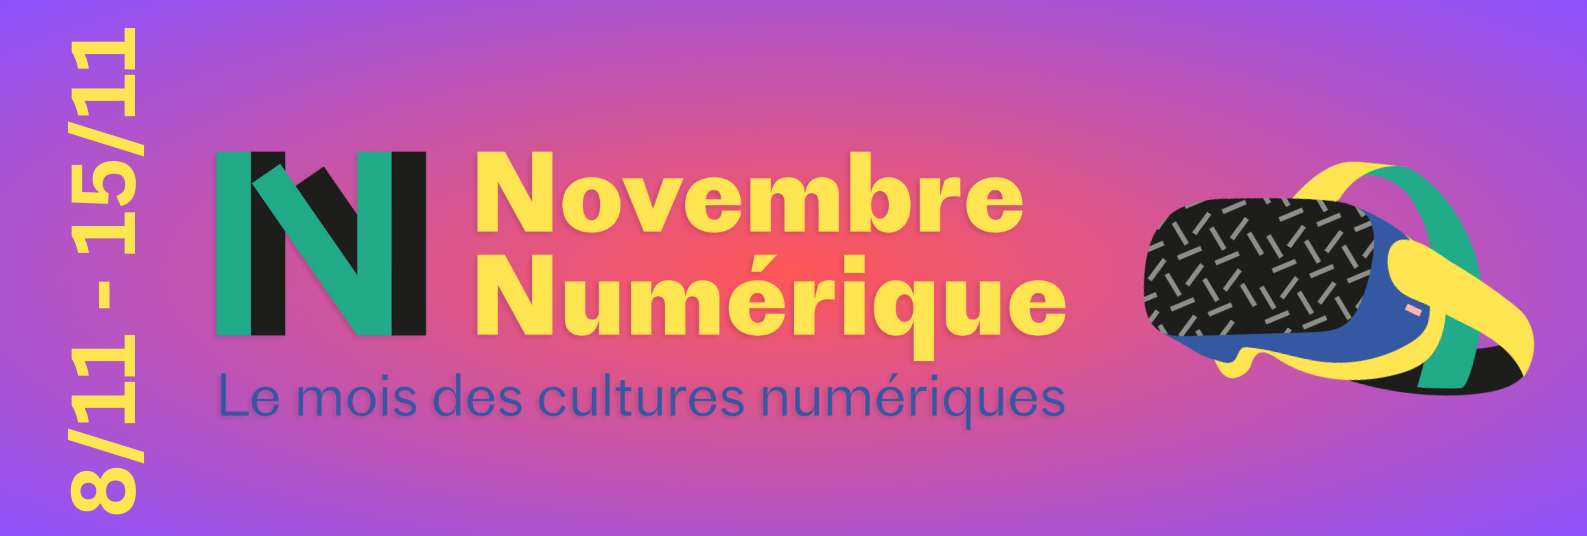 Novembre Numérique – Le mois des cultures numériques